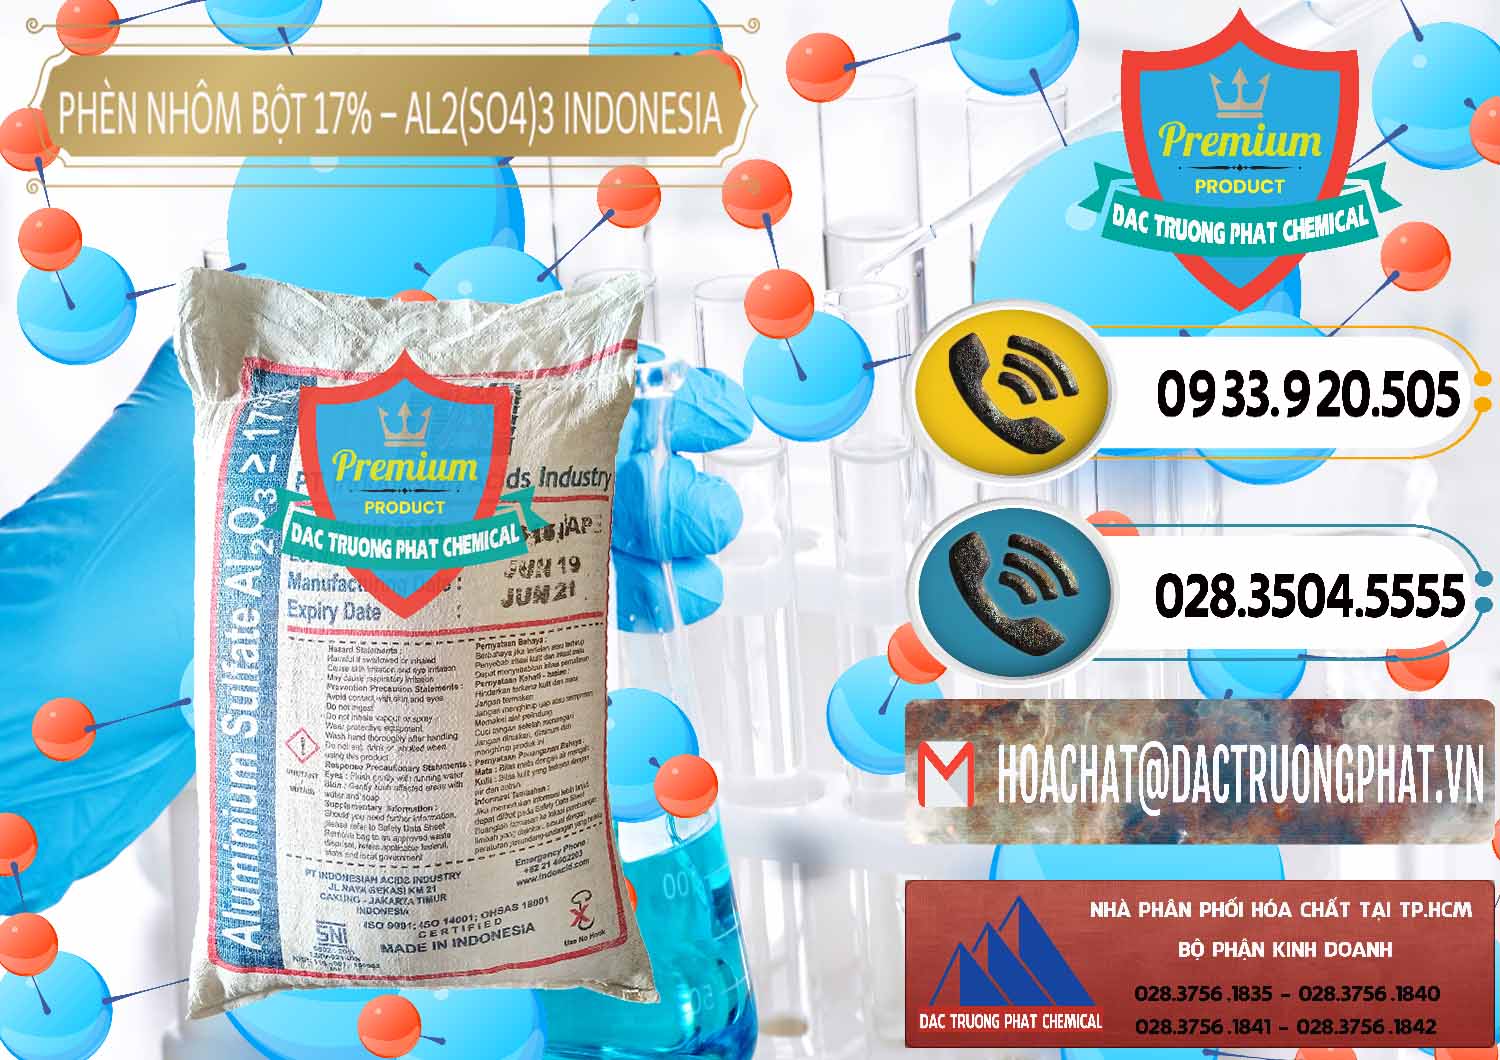 Cty chuyên cung cấp ( bán ) Phèn Nhôm Bột - Al2(SO4)3 17% bao 25kg Indonesia - 0114 - Nhà phân phối & cung ứng hóa chất tại TP.HCM - hoachatdetnhuom.vn